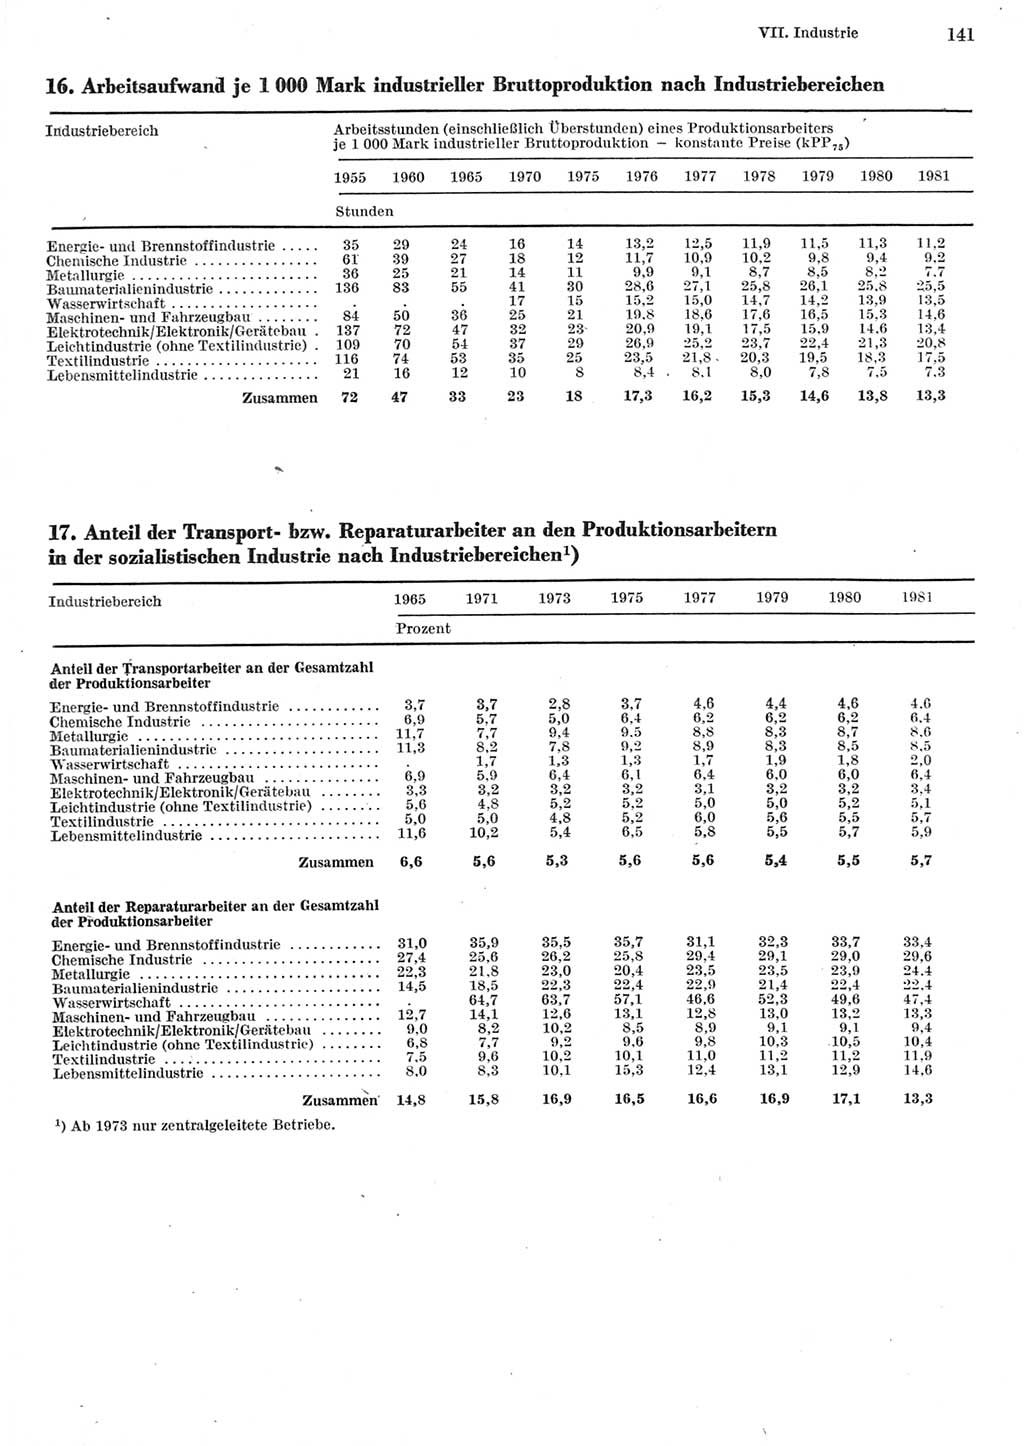 Statistisches Jahrbuch der Deutschen Demokratischen Republik (DDR) 1982, Seite 141 (Stat. Jb. DDR 1982, S. 141)